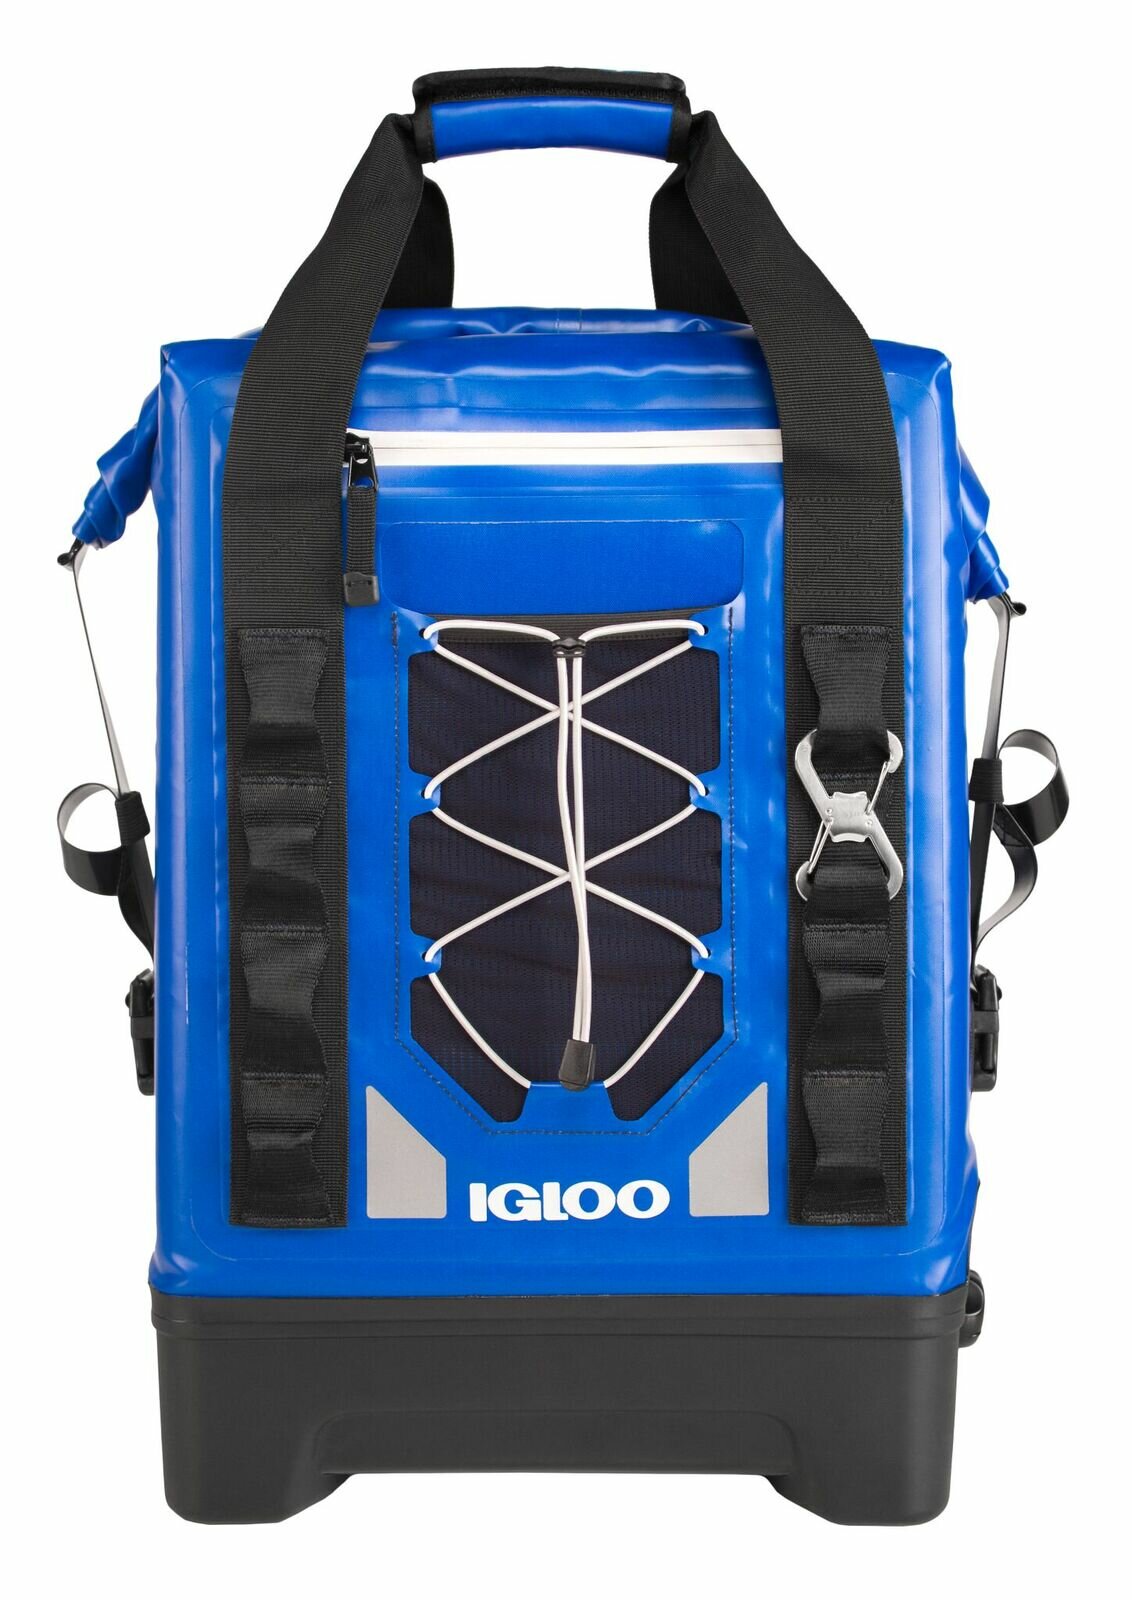 backpack cooler